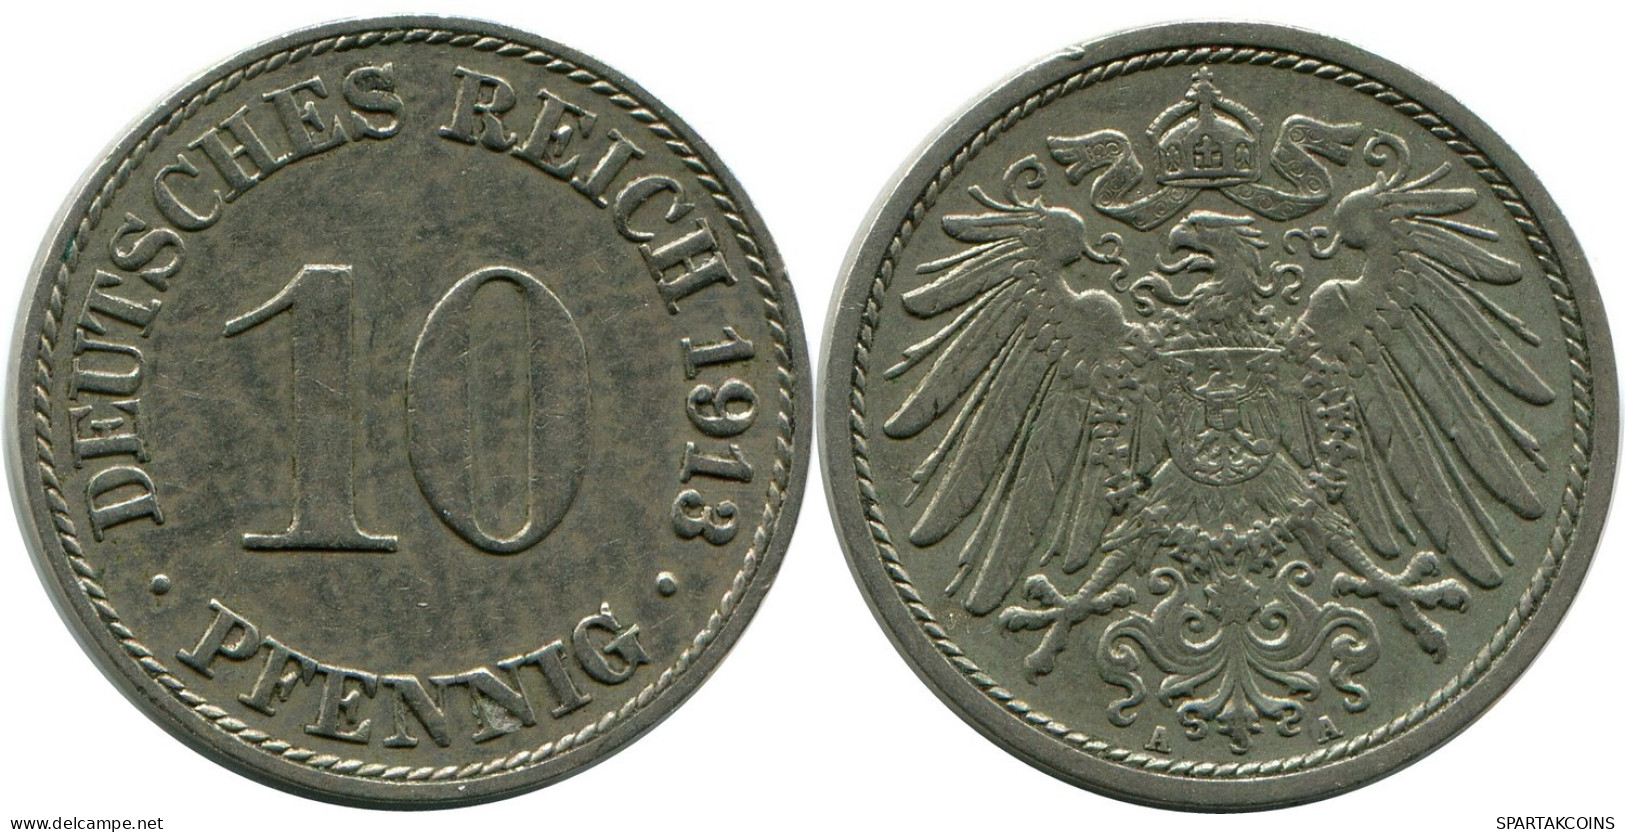 10 PFENNIG 1913 A GERMANY Coin #DB291.U.A - 10 Pfennig